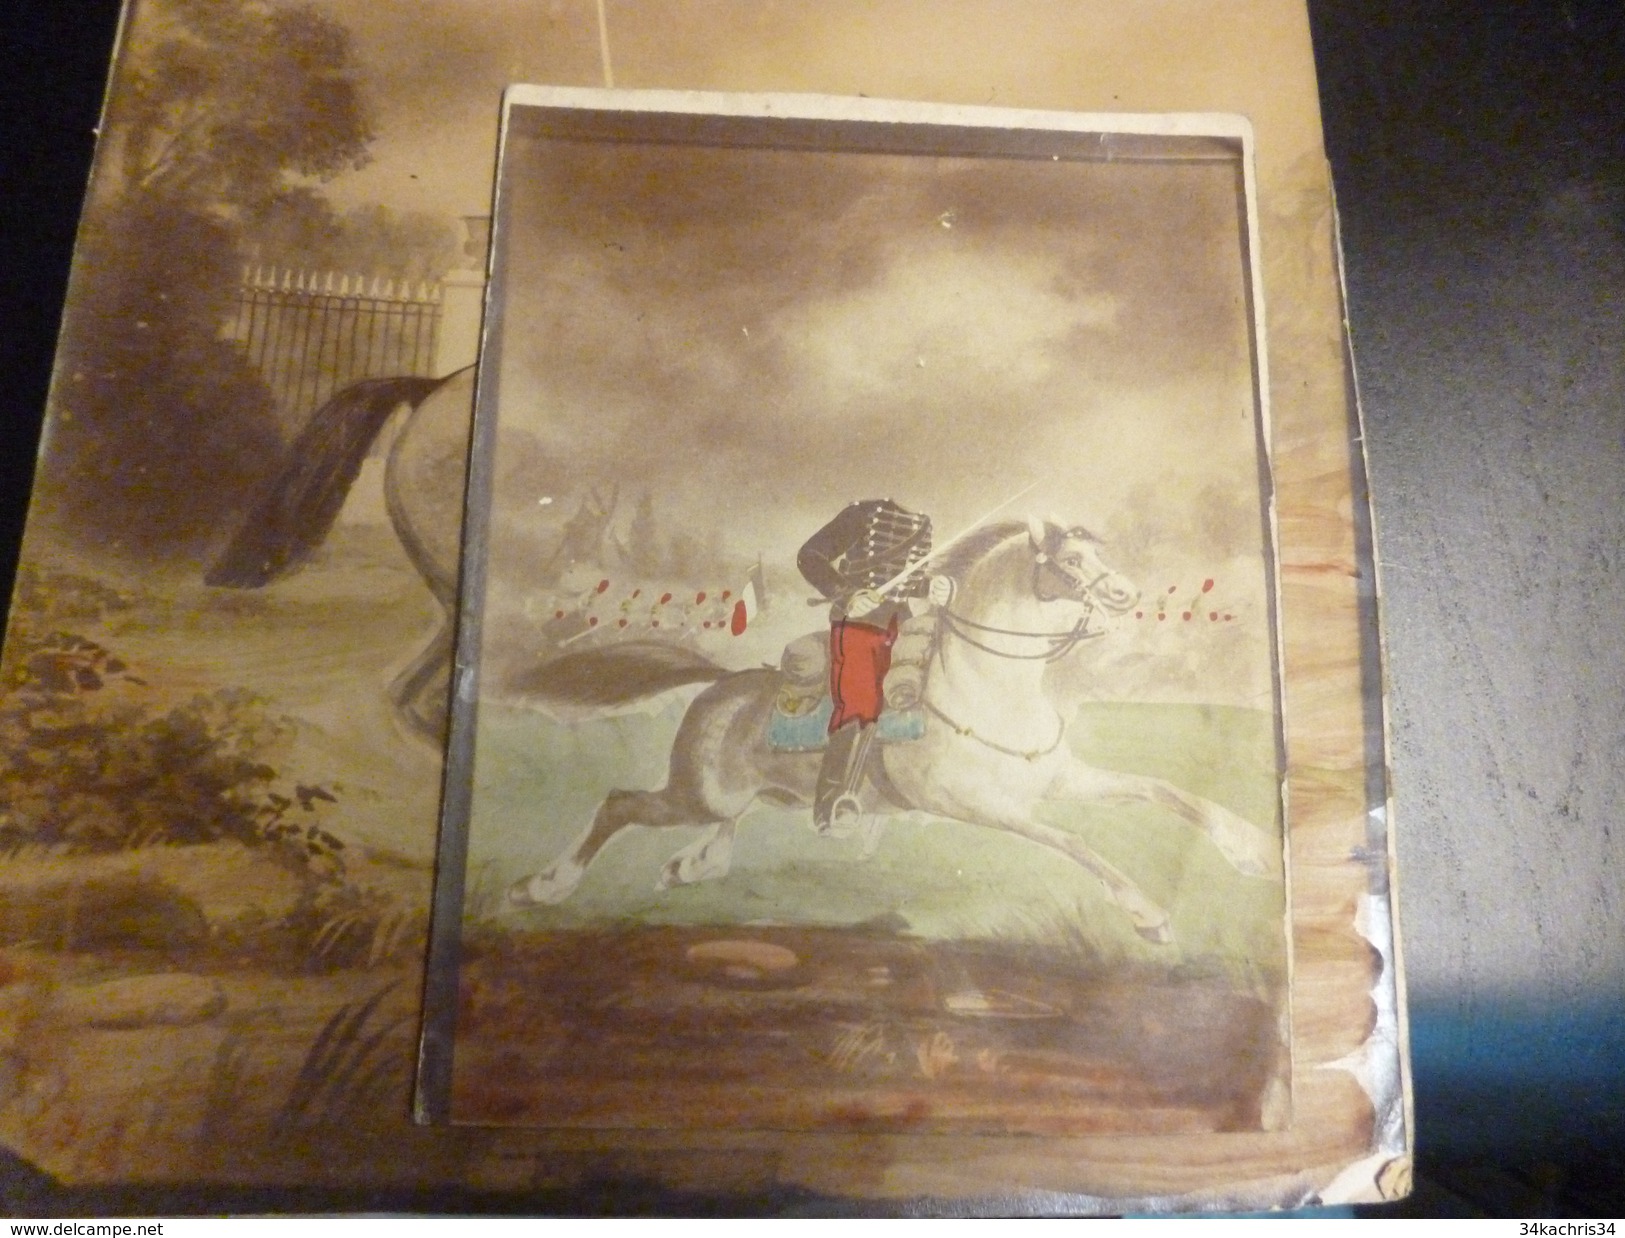 Curiosa 4 peintures cavaliers armée Napoléon sans tête commande particulière